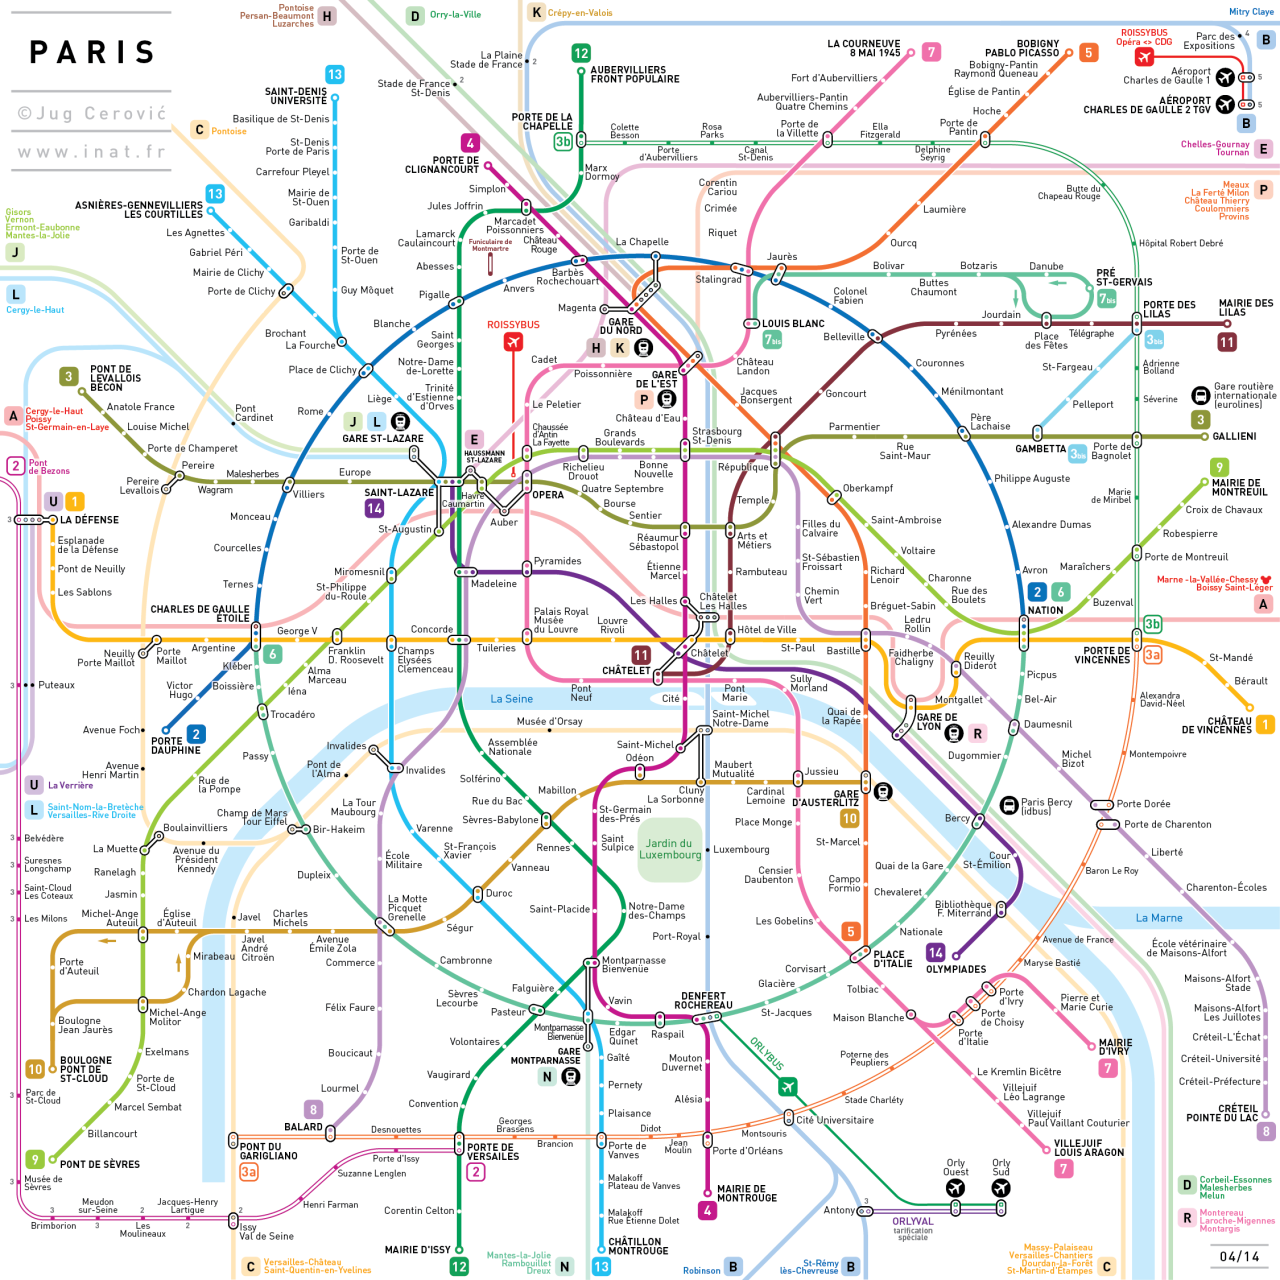 Paris transit | Metro map, Paris metro map, Map